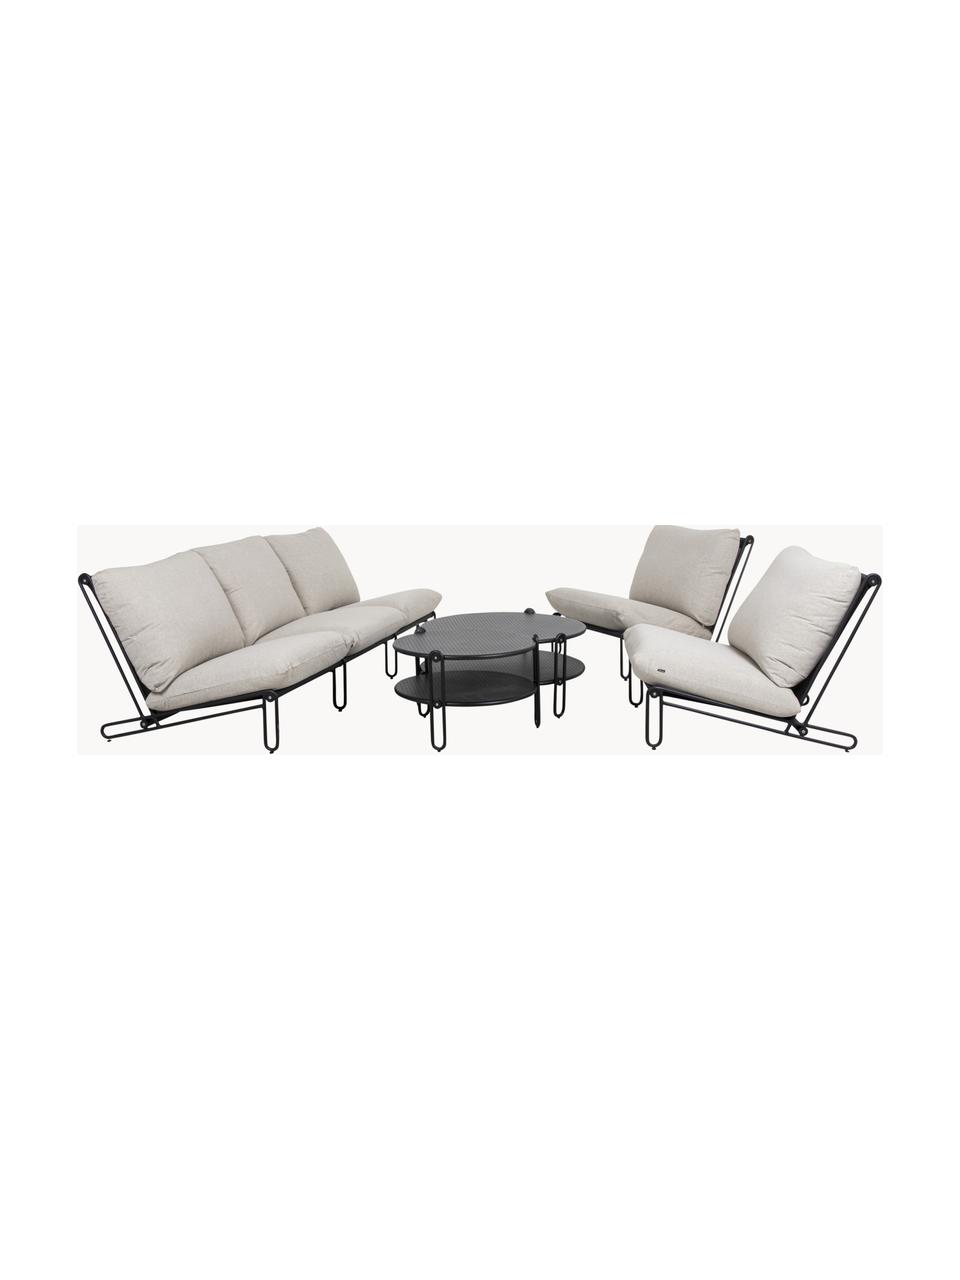 Modulo adicional para silla de metal Blixt, Tapizado: poliéster, Estructura: tela y metal revestido, Tejido greige, negro, An 103 x F 78 cm